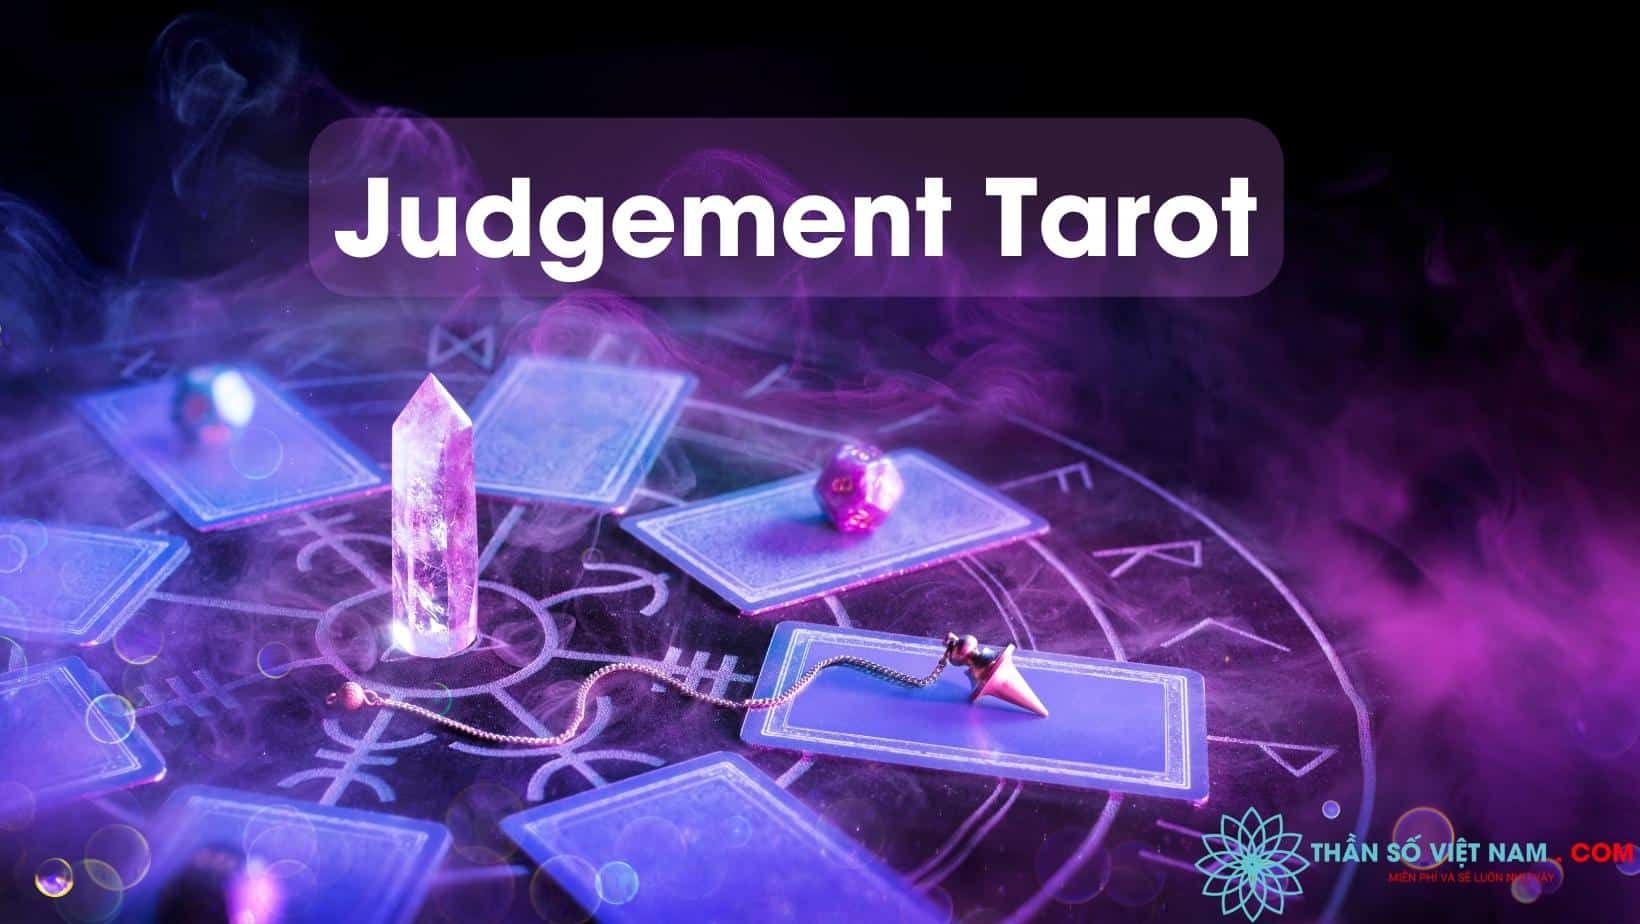 Tarot: Khám phá tương lai của bạn thông qua các lá bài Tarot thông minh và đáng tin cậy. Với các chuyên gia Tarot hướng dẫn và giải thích chính xác ý nghĩa của mỗi lá bài, bạn sẽ có được những sự hiểu biết mới về cuộc sống và cảm thấy yên tâm hơn trong tương lai.